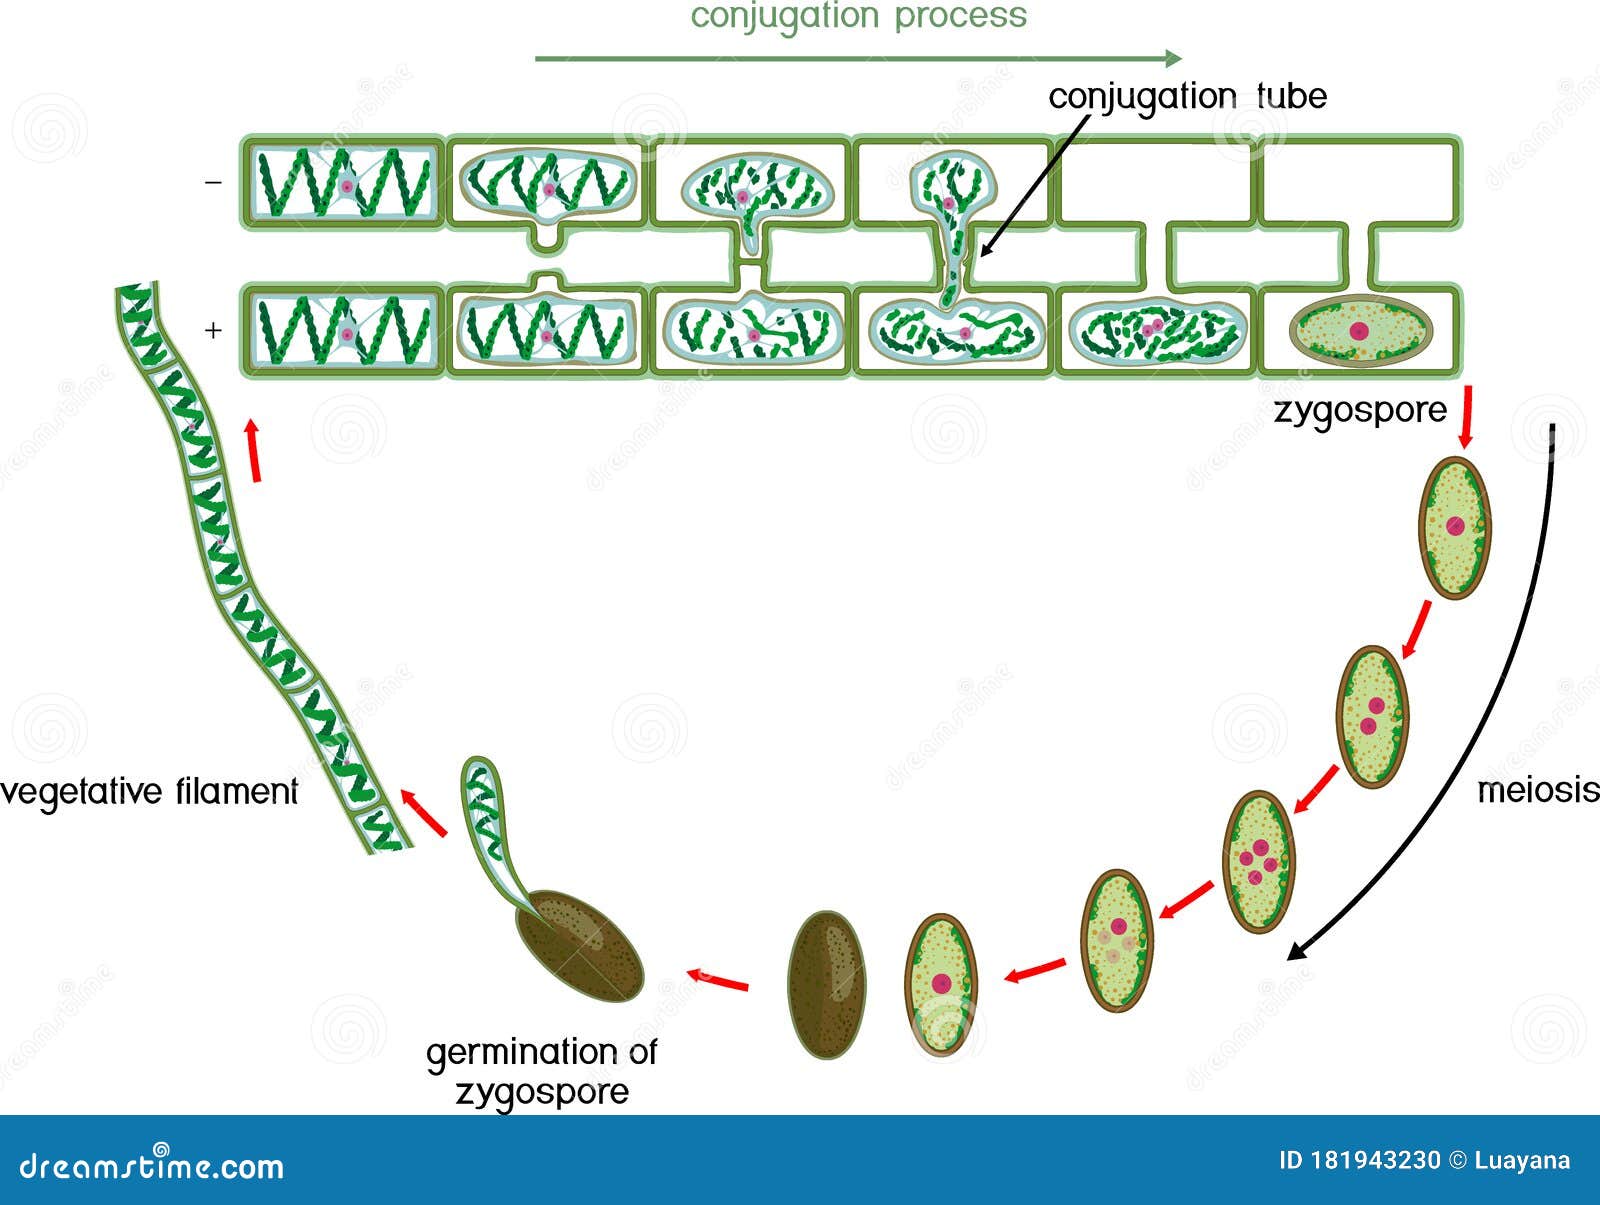 Цикл спирогиры. Цикл развития спирогиры. Жизненный цикл водорослей спирогира. Жизненного цикла водоросли Spirogyra. Цикл размножения спирогиры.